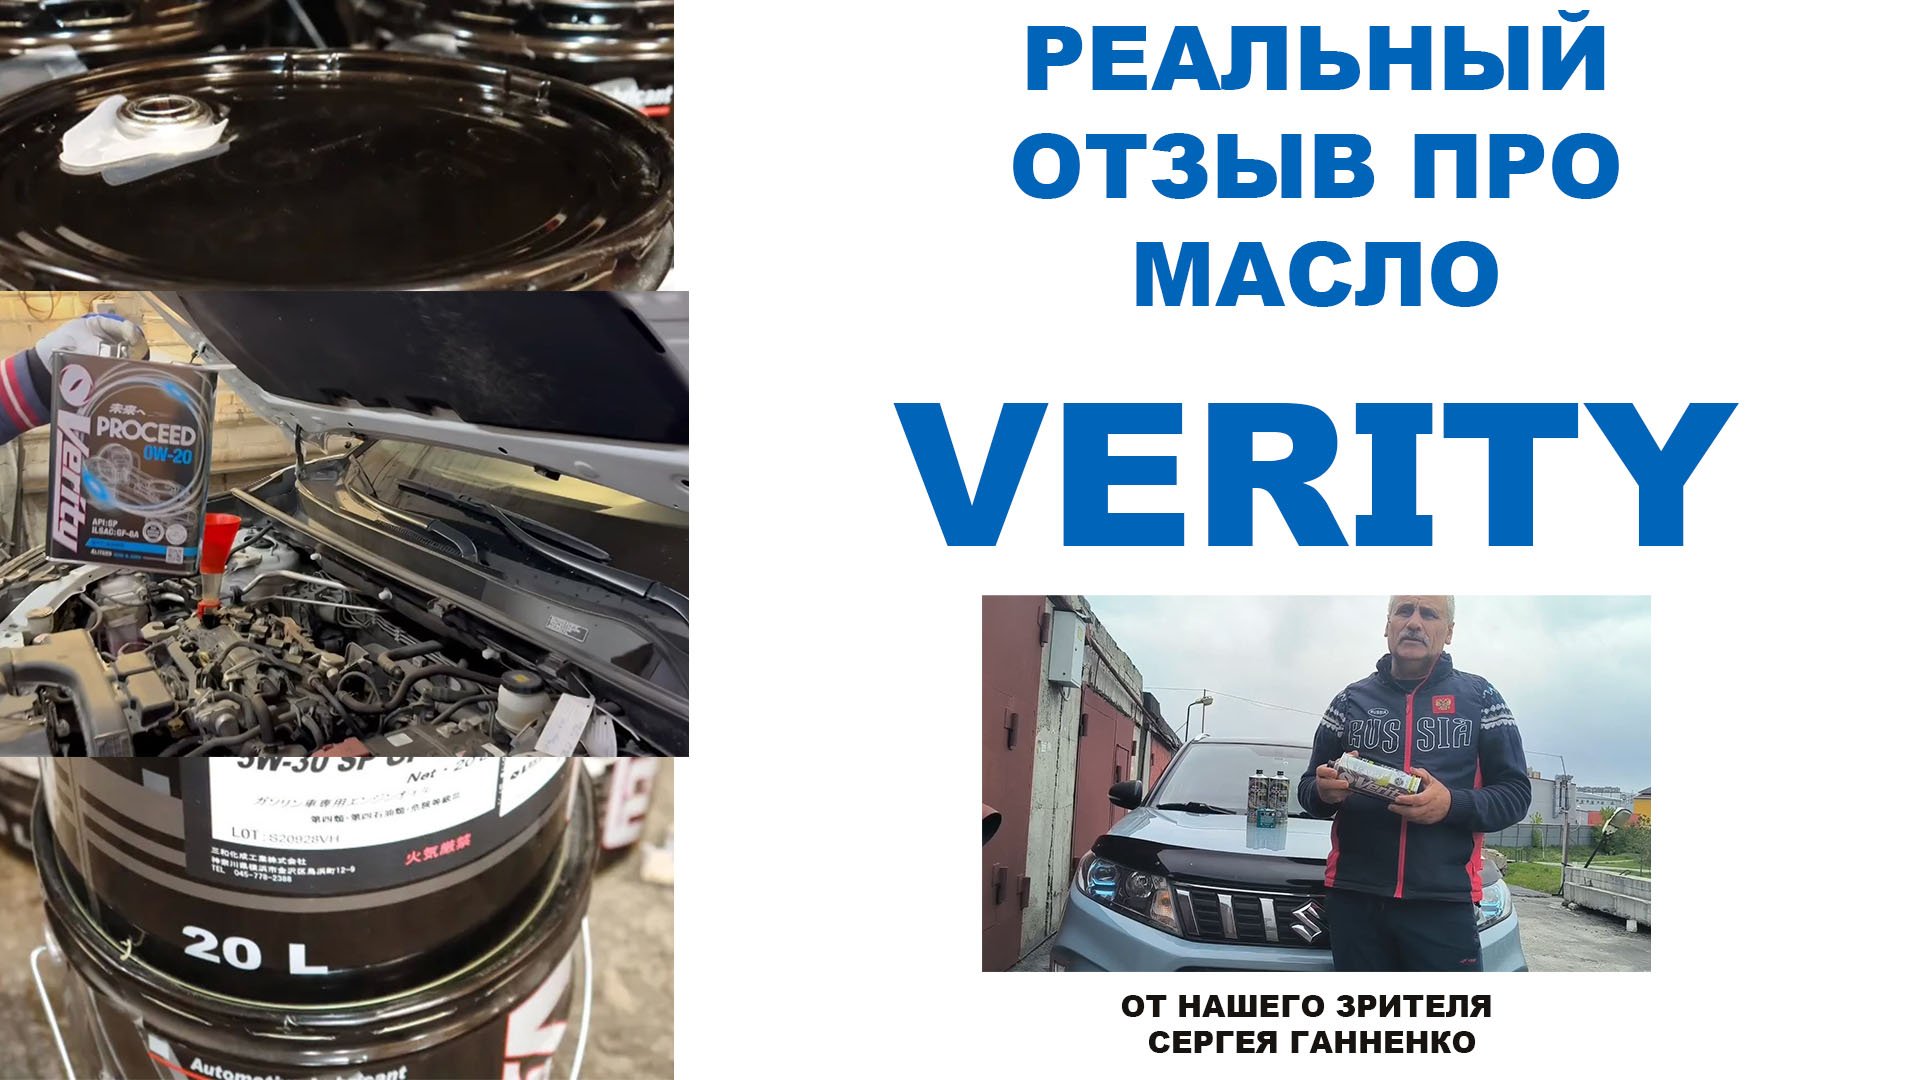 Реальный отзыв про моторное масло VERITY от нашего зрителя Сергея Ганненко